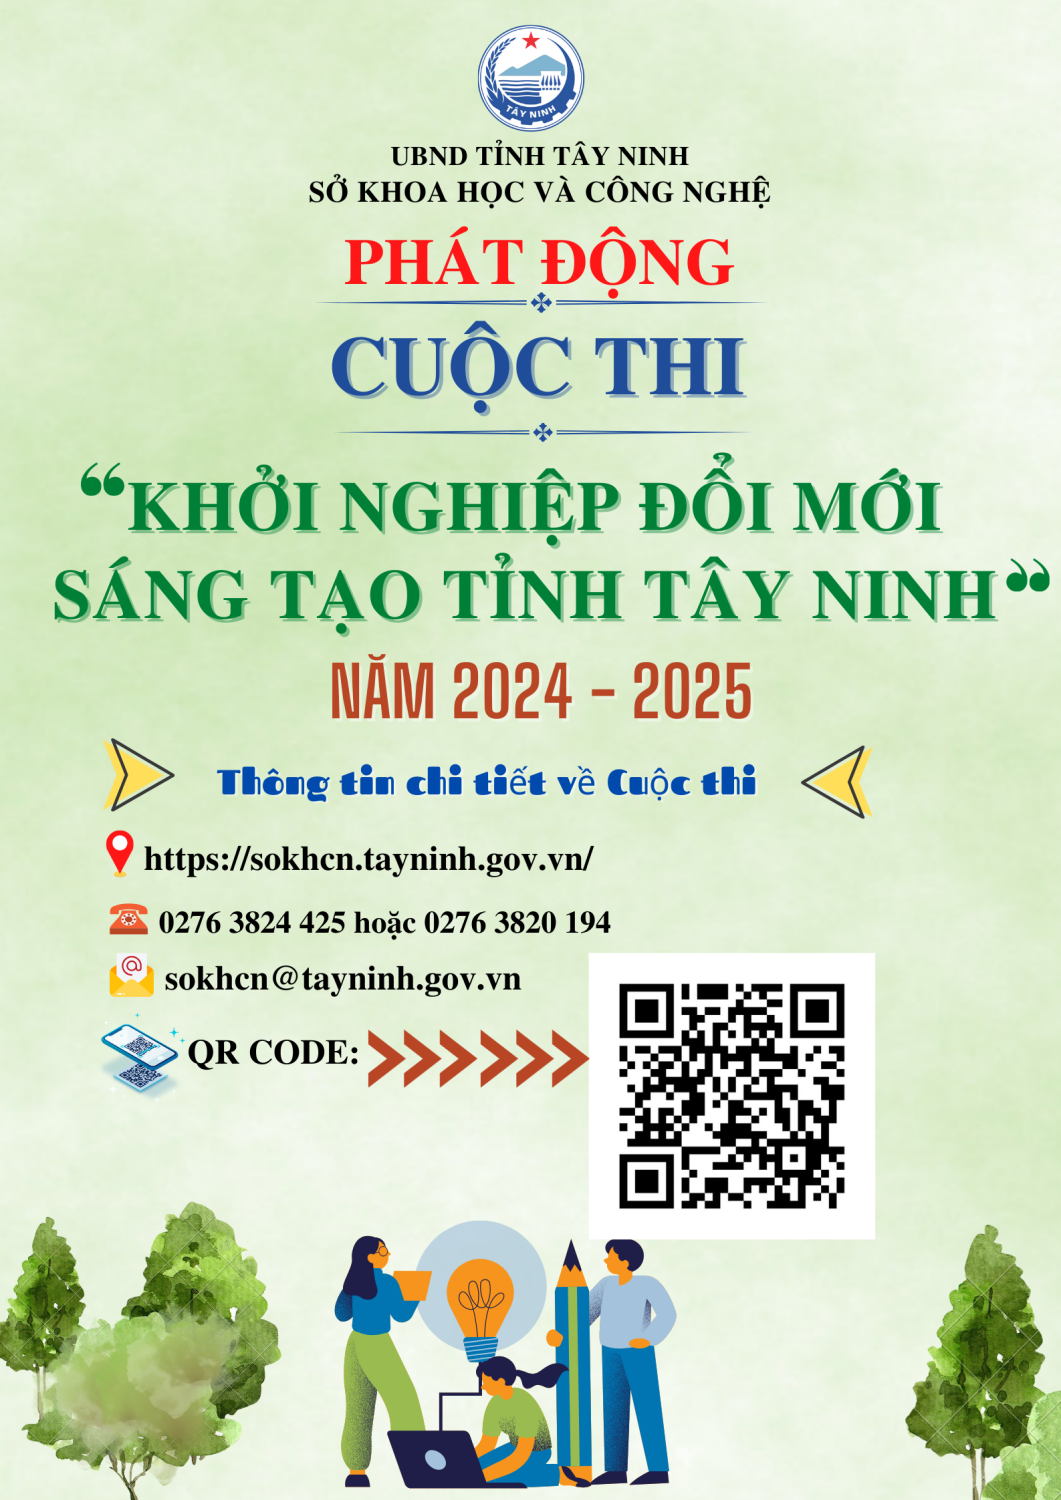 Phát động Cuộc thi "Khởi nghiệp đổi mới sáng tạo tỉnh Tây Ninh năm 2024-2025"